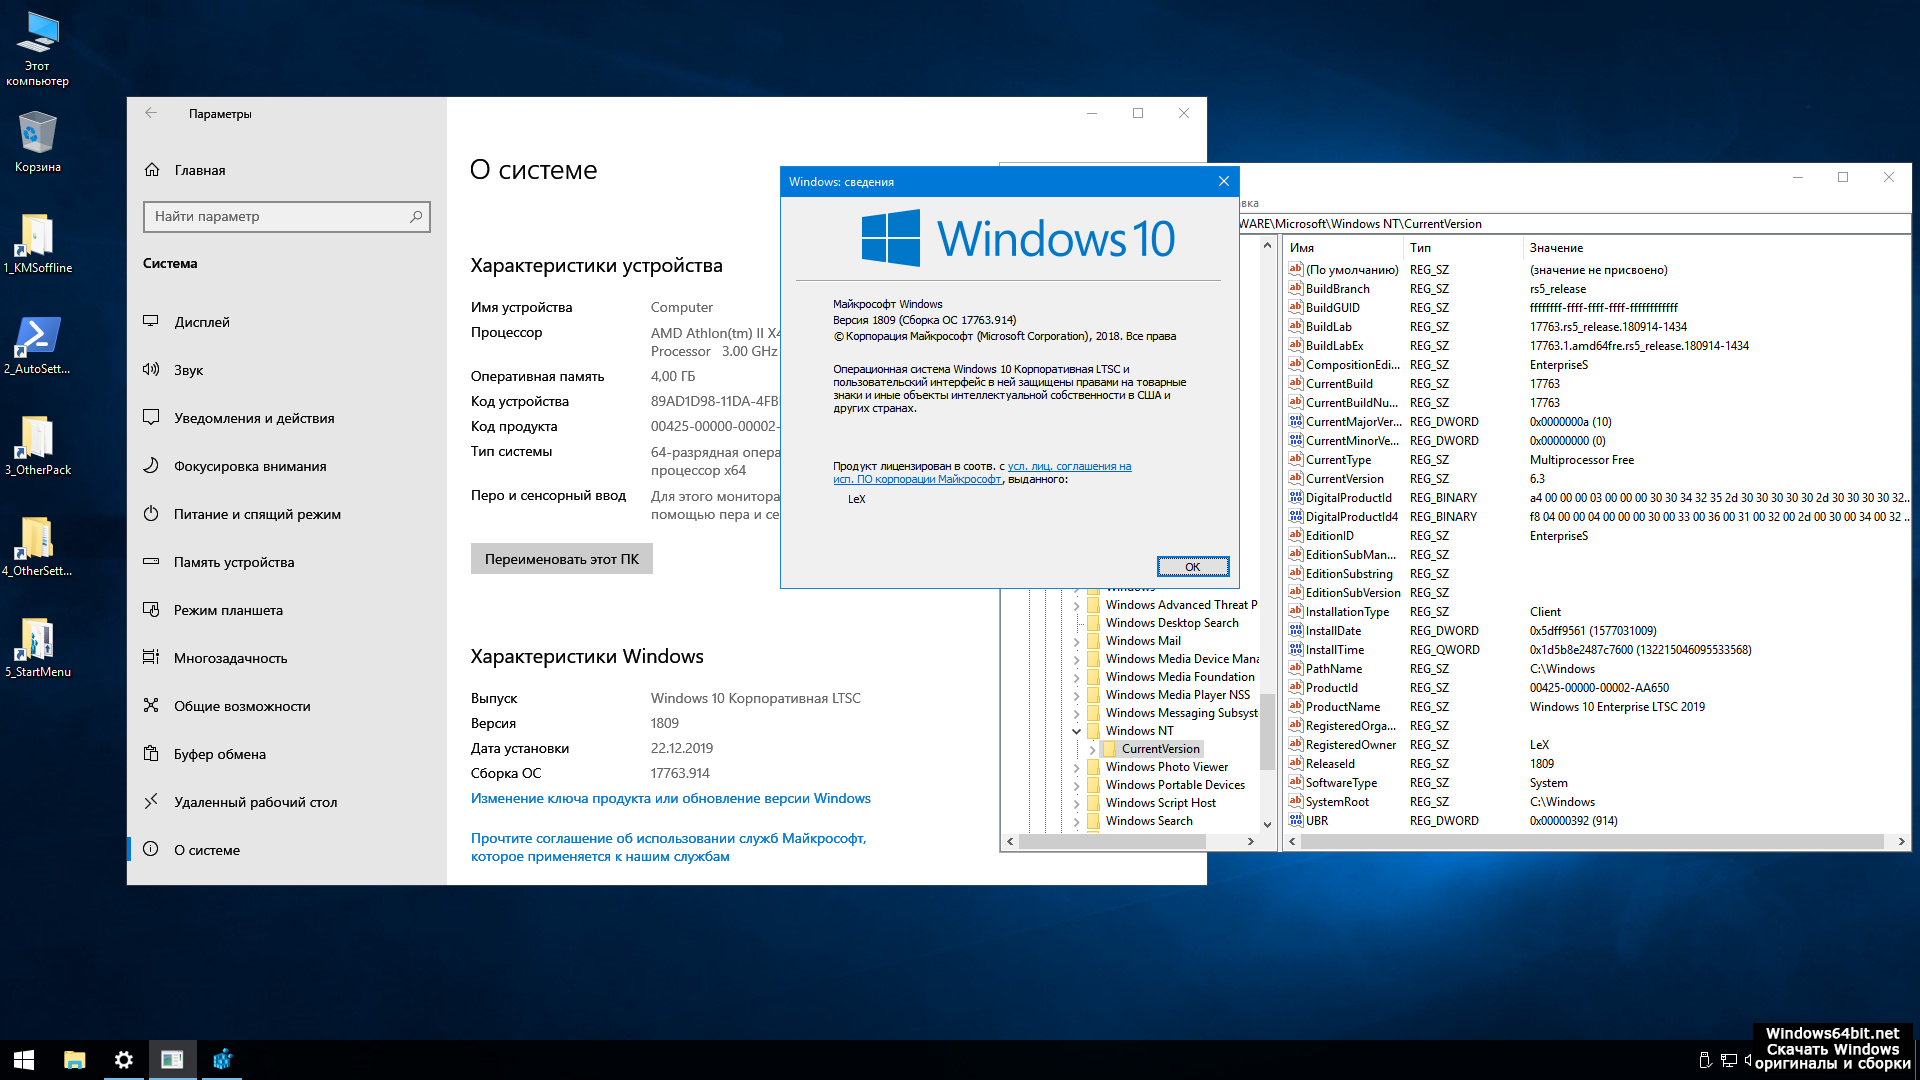 Виндовс 10 зверь. Windows 10 Enterprise (корпоративная). Винда 10. Редакции виндовс 10. Система виндовс 10.